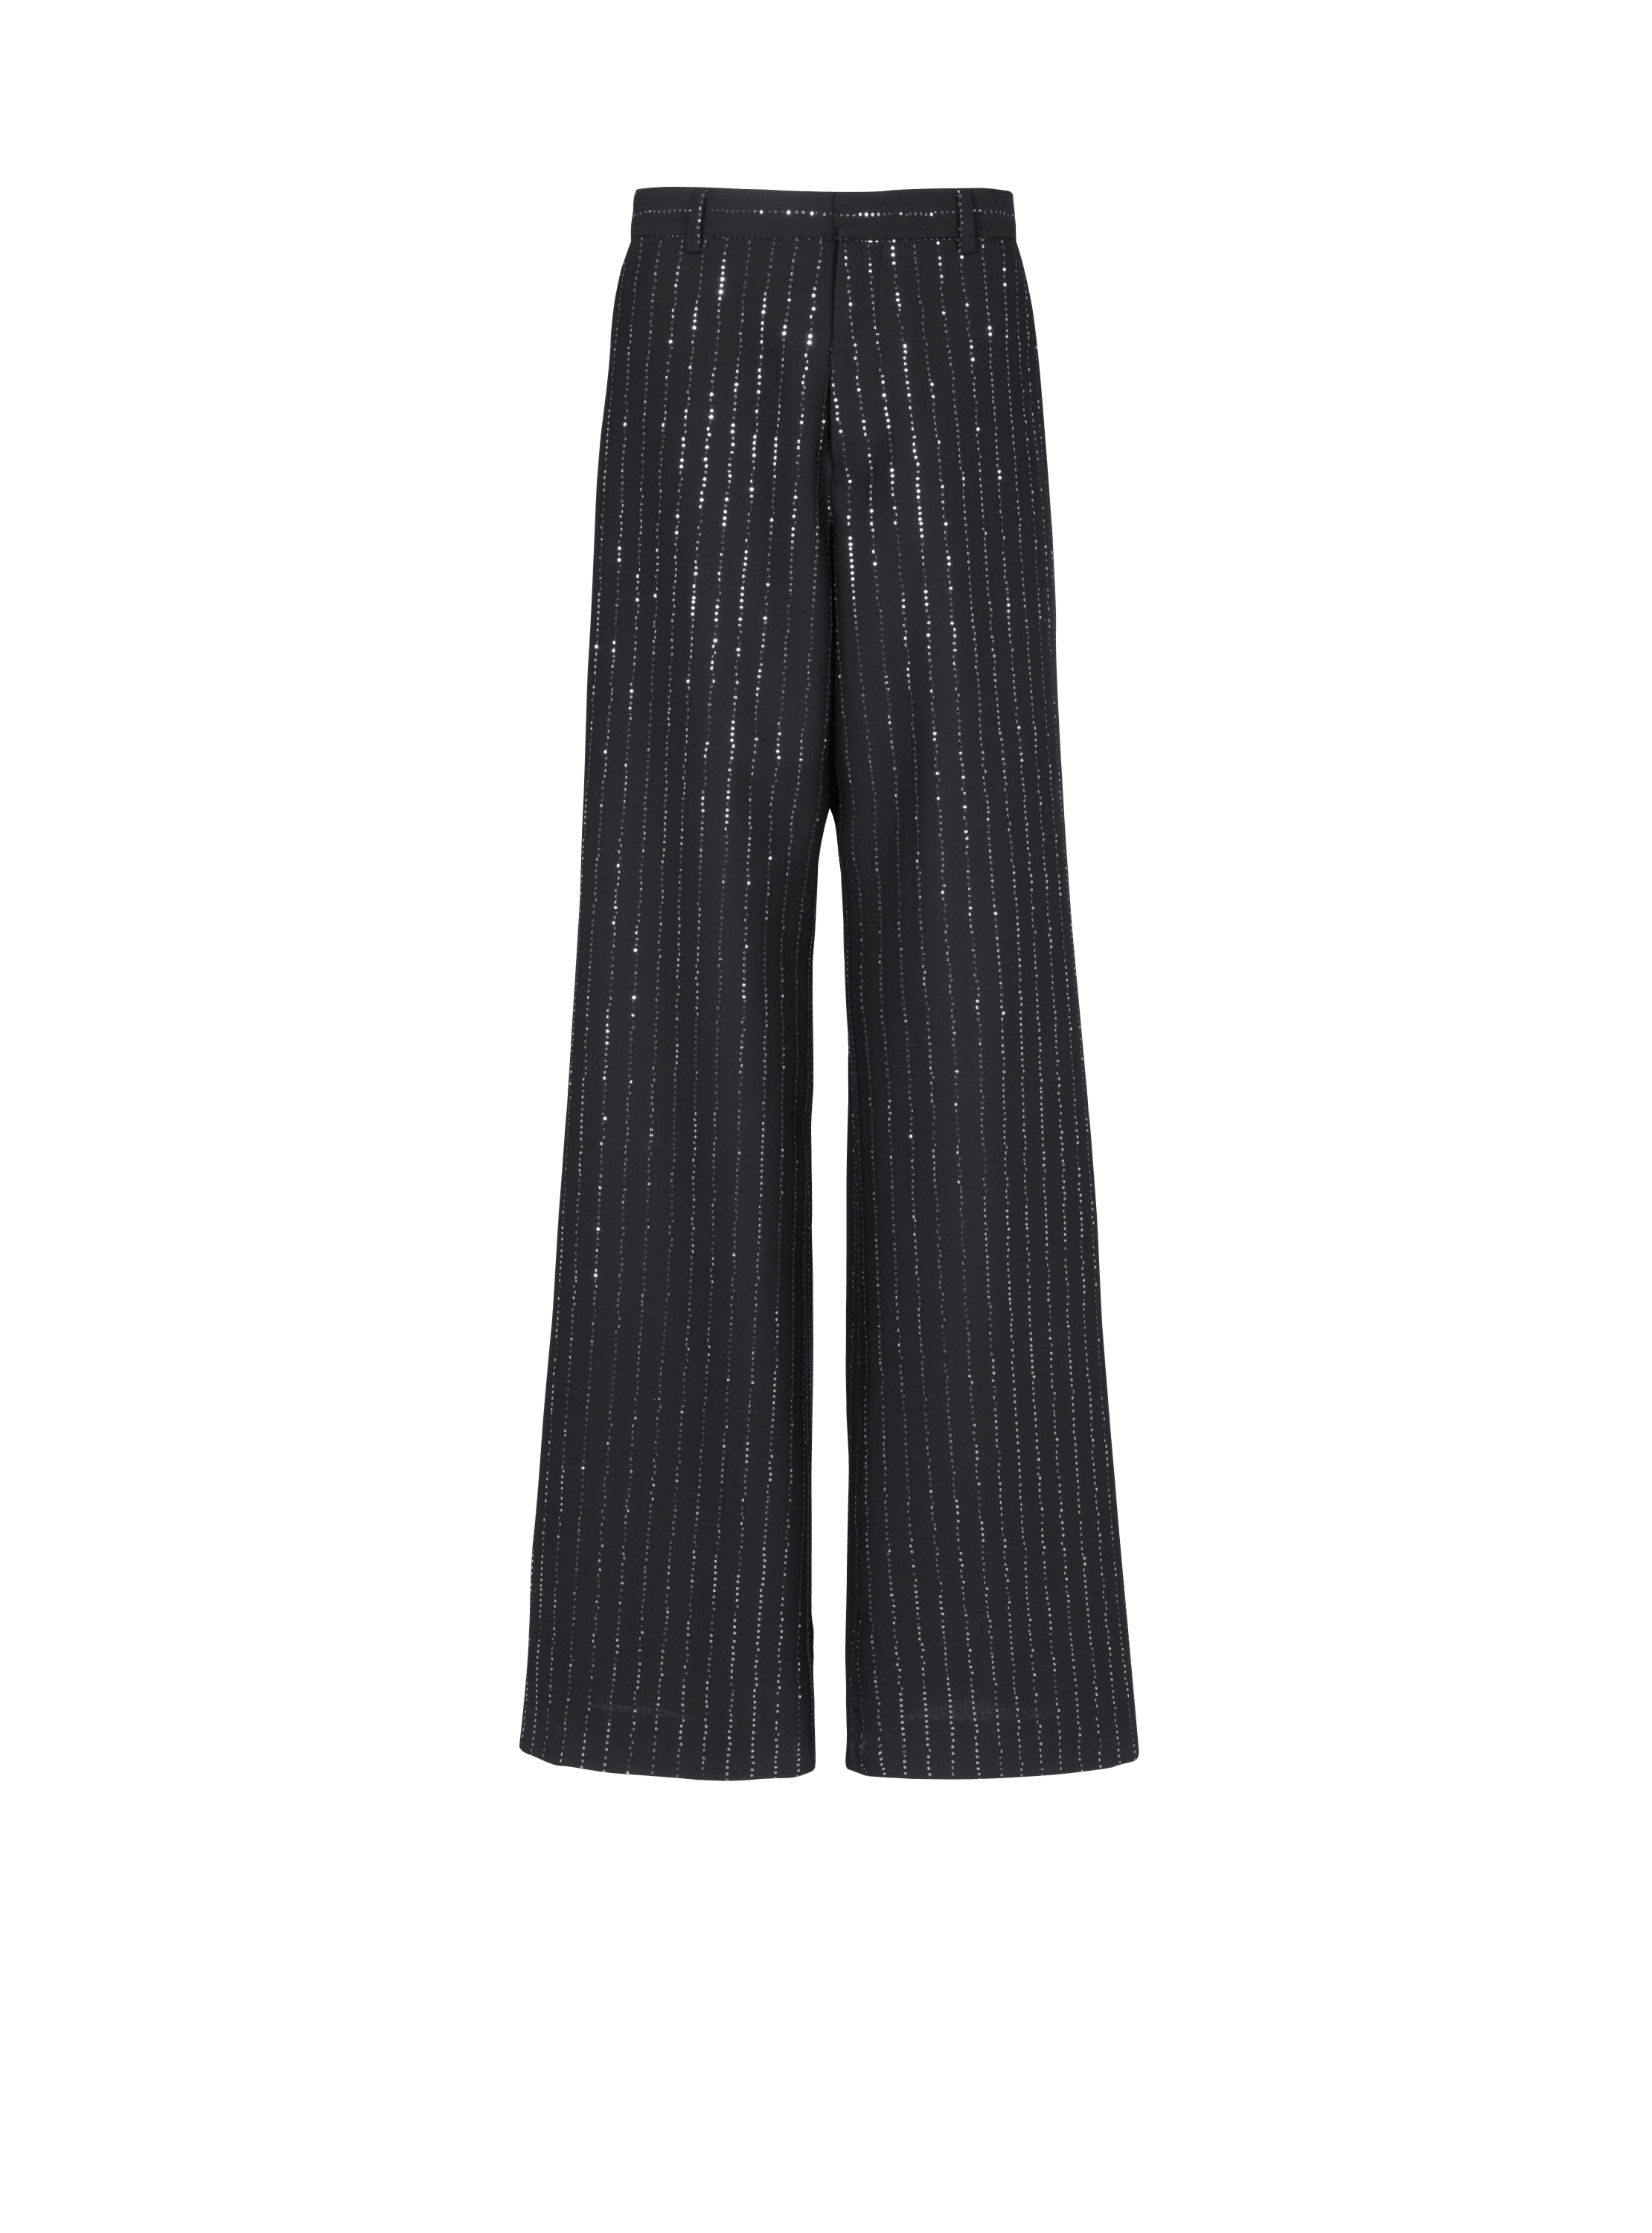 Pantaloni con righe di paillettes, nero, hi-res